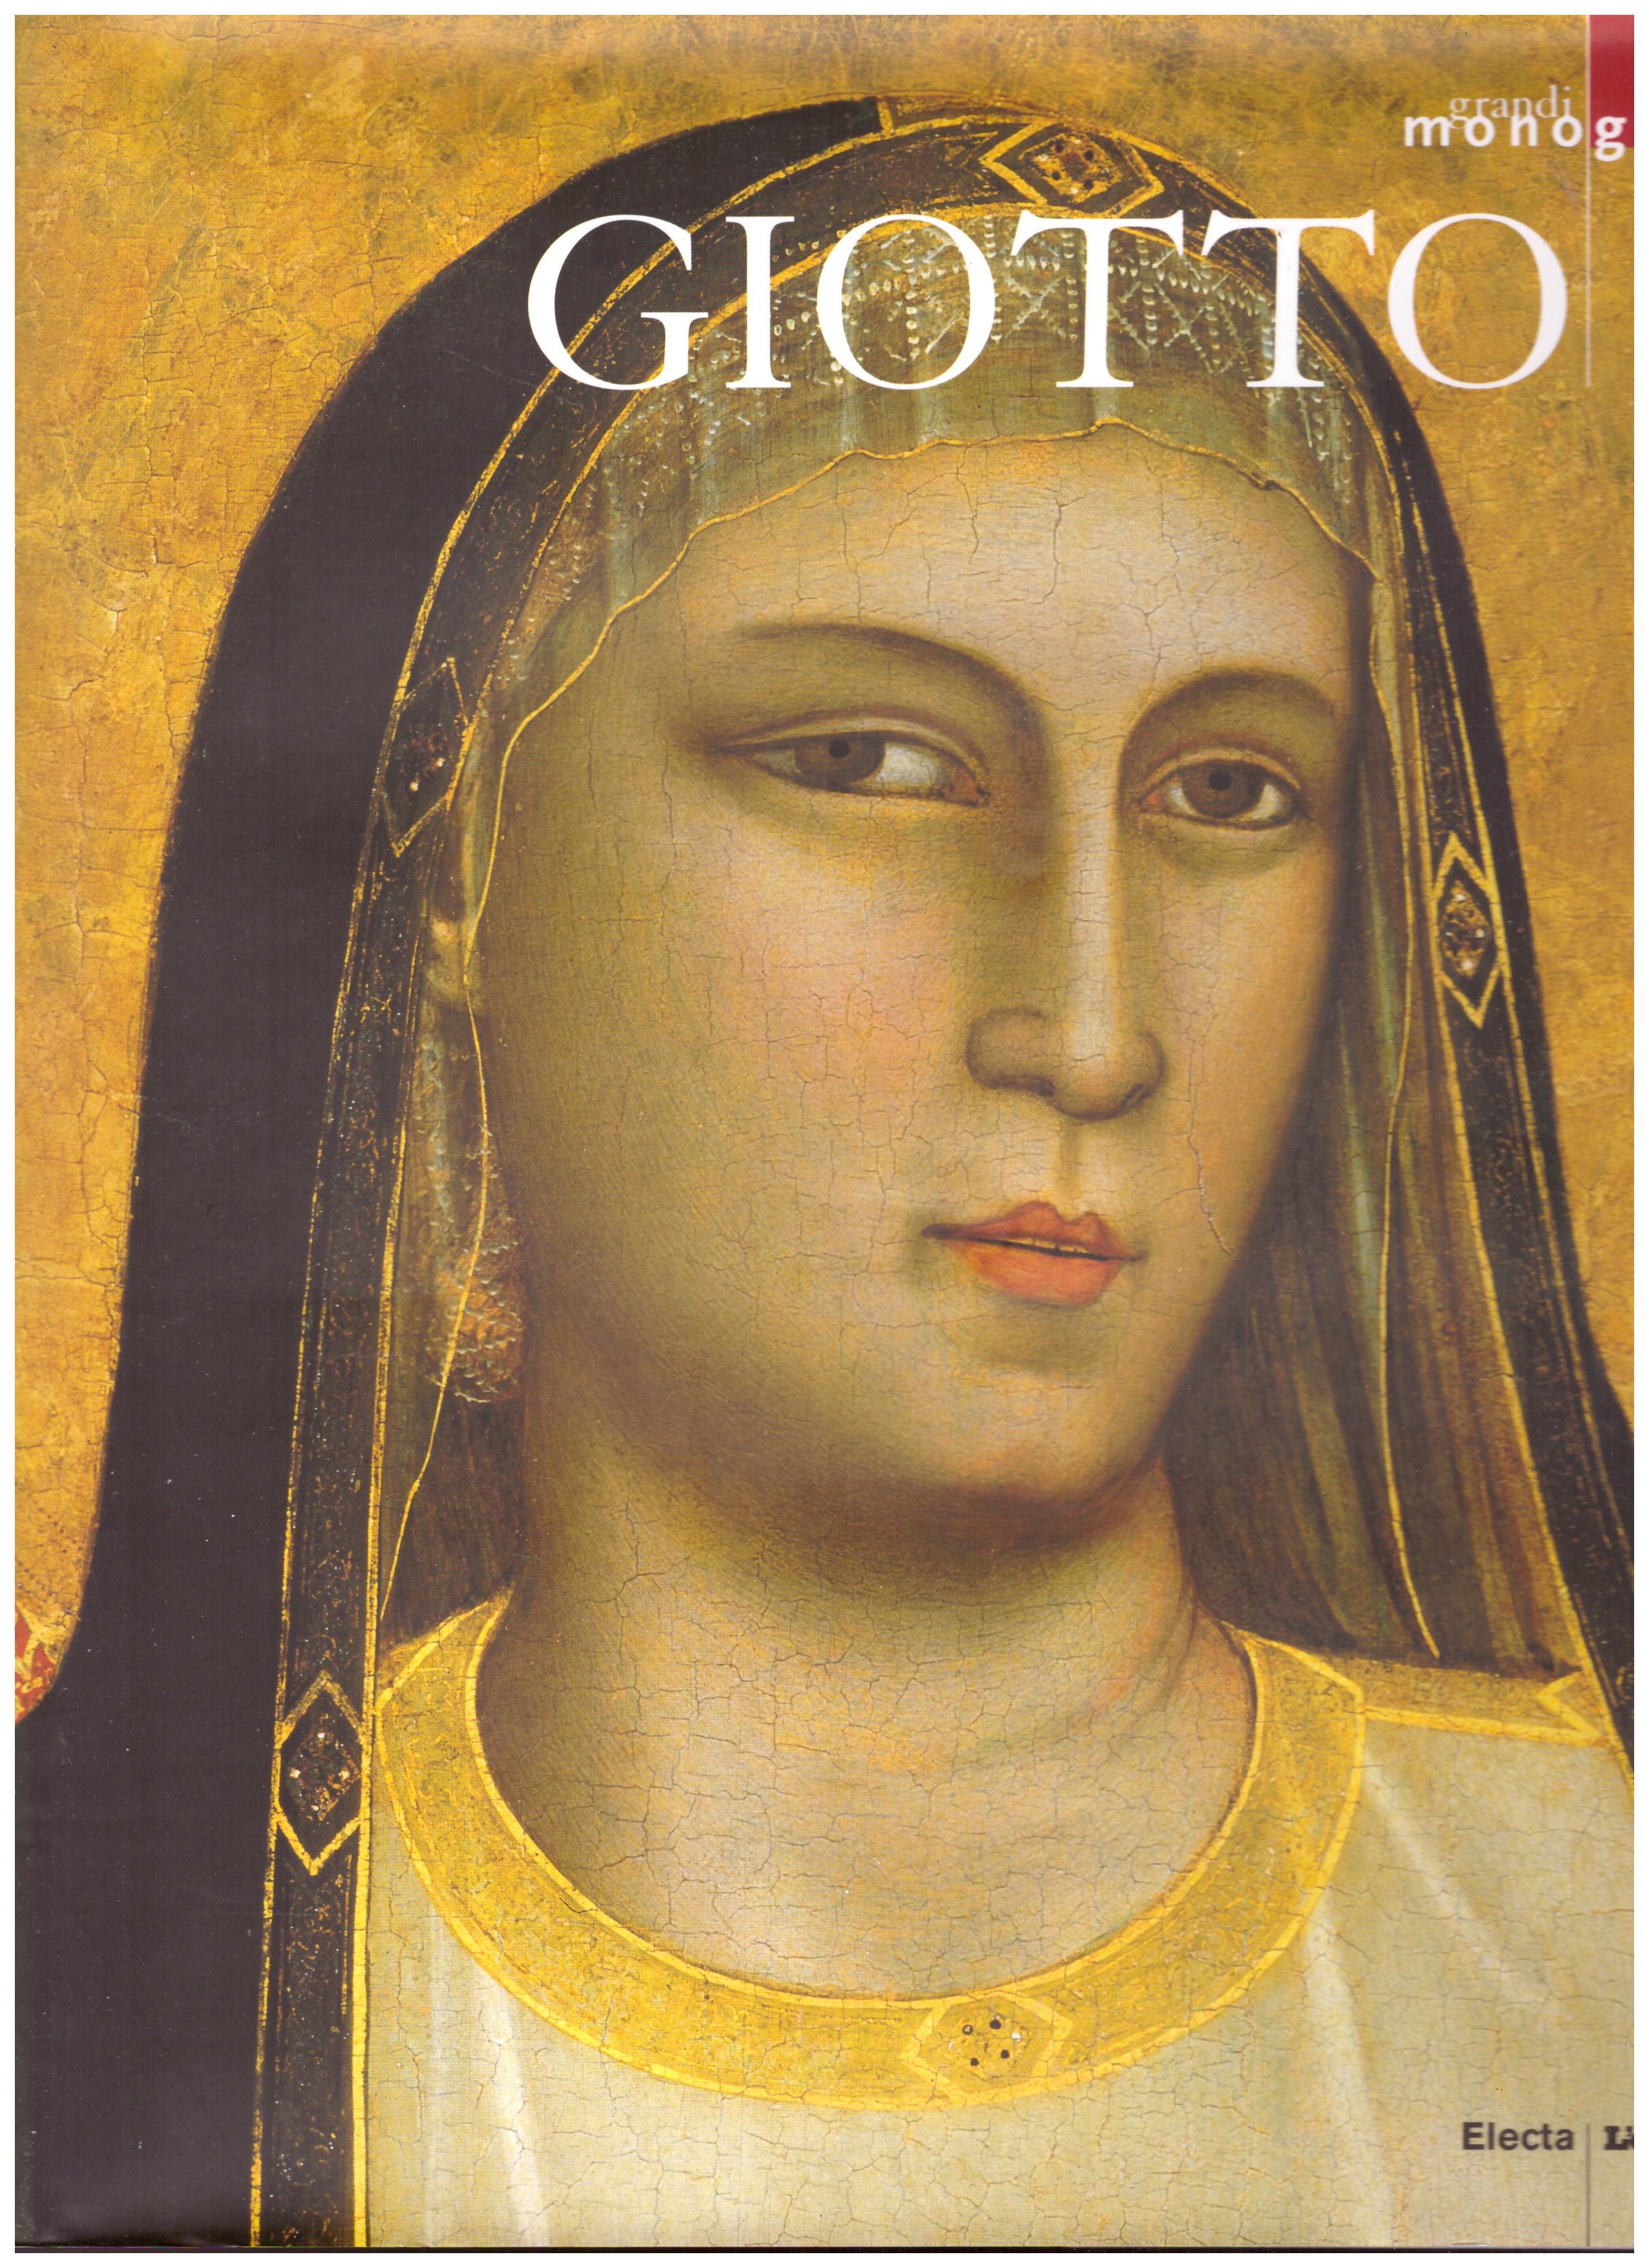 Titolo: Grandi monografie, Giotto Autore: AA.VV.  Editore: Electa, L'espresso 2006